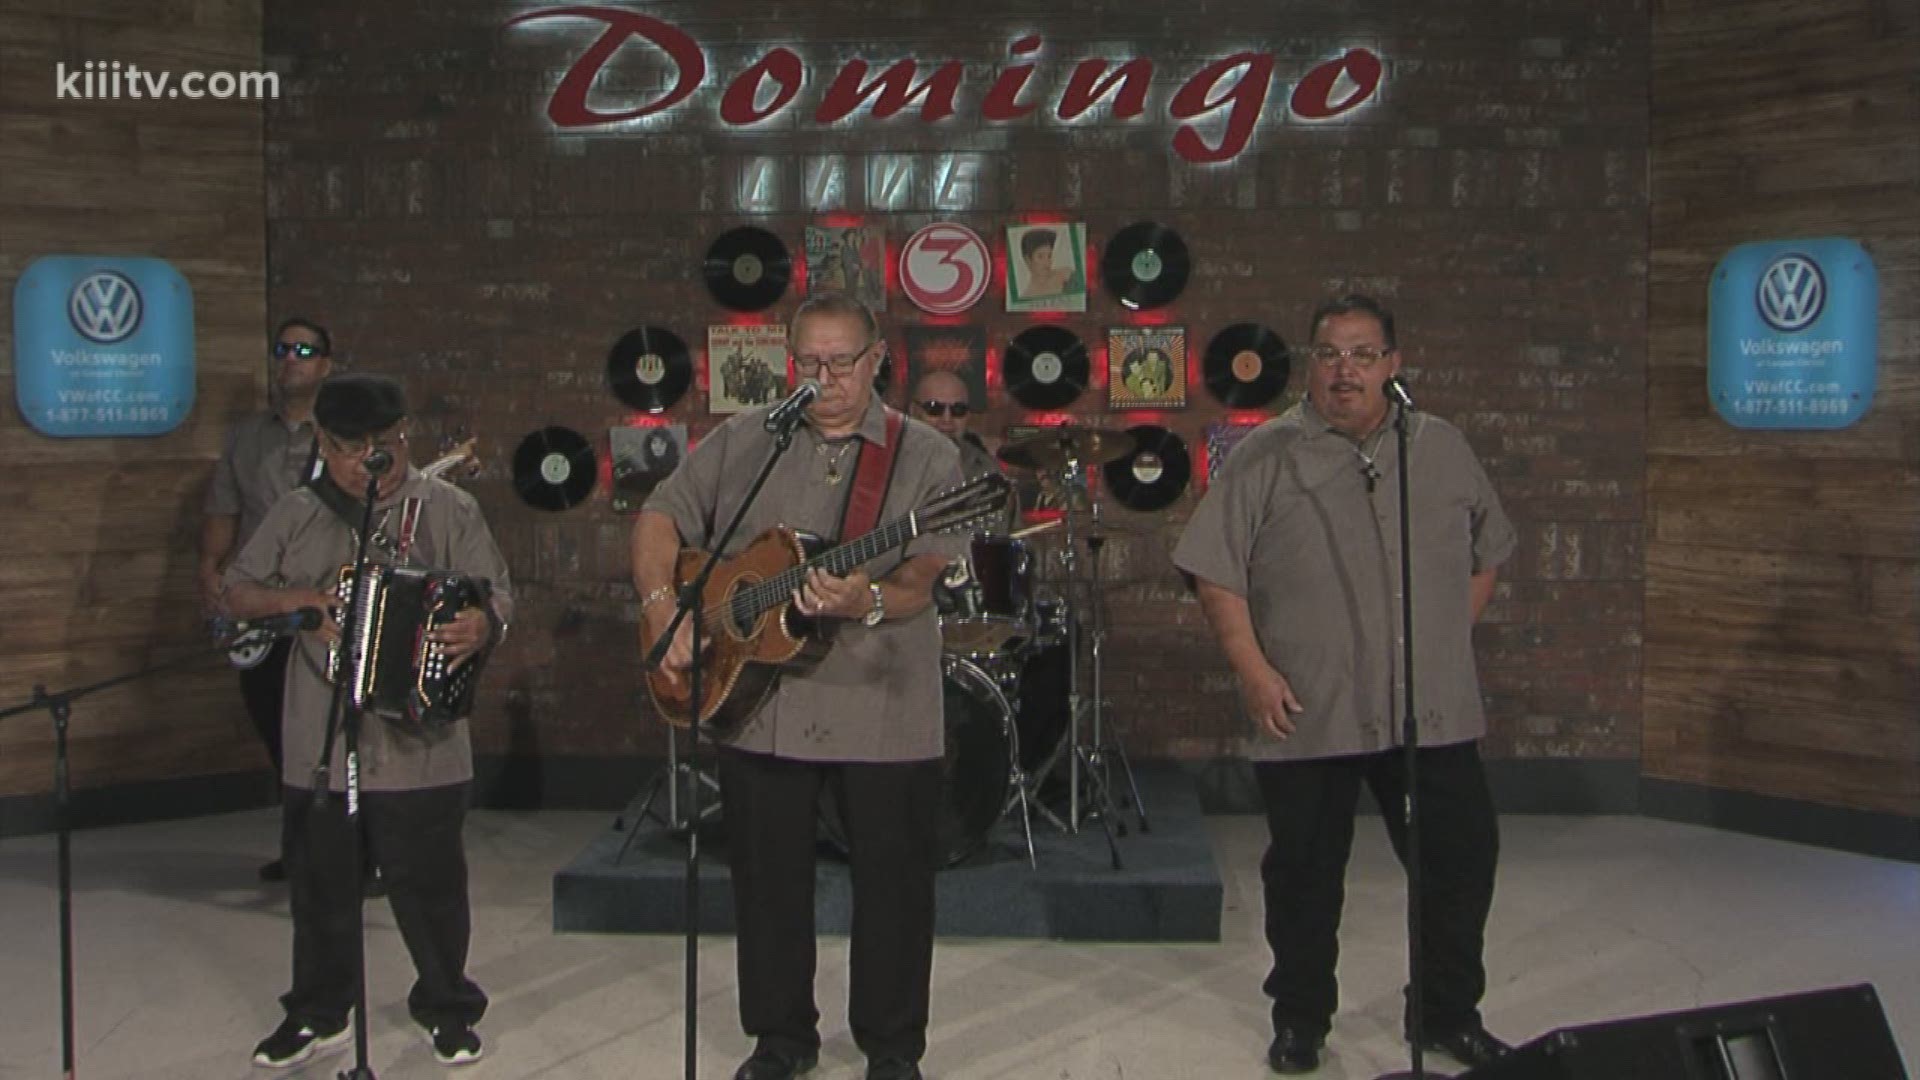 Los Nuevos Campeones performing "Suspiro Por Ti" on Domingo Live.